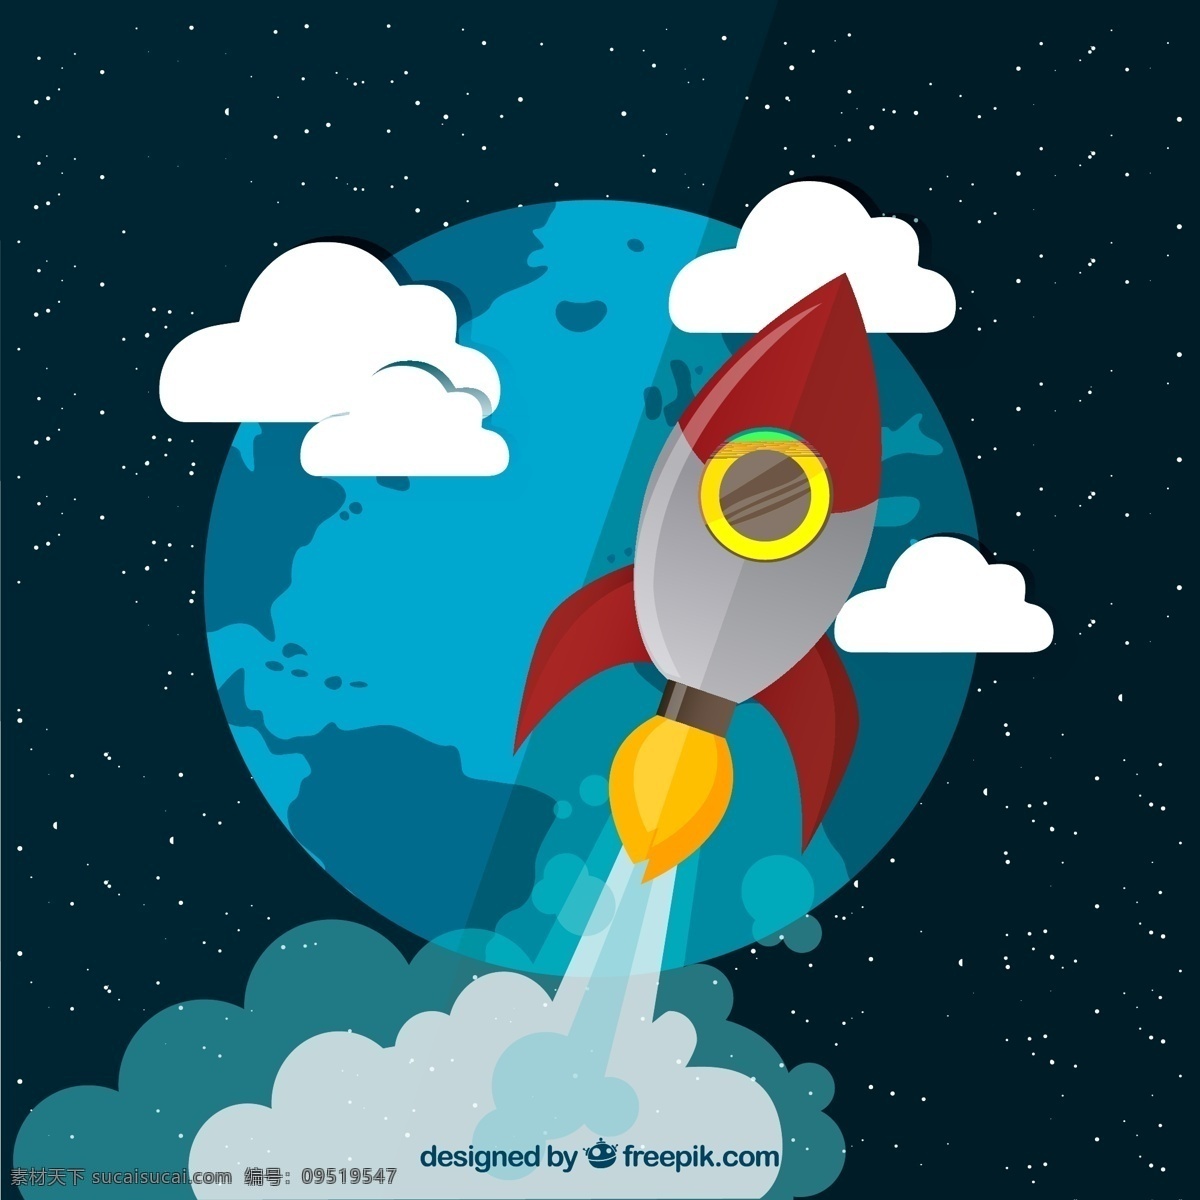 冲出 地球 火箭 矢量 冲出地球 航天 航空 交通工具 云朵 白云 星空 宇宙 卡通 插画 背景 海报 画册 现代科技 黑色